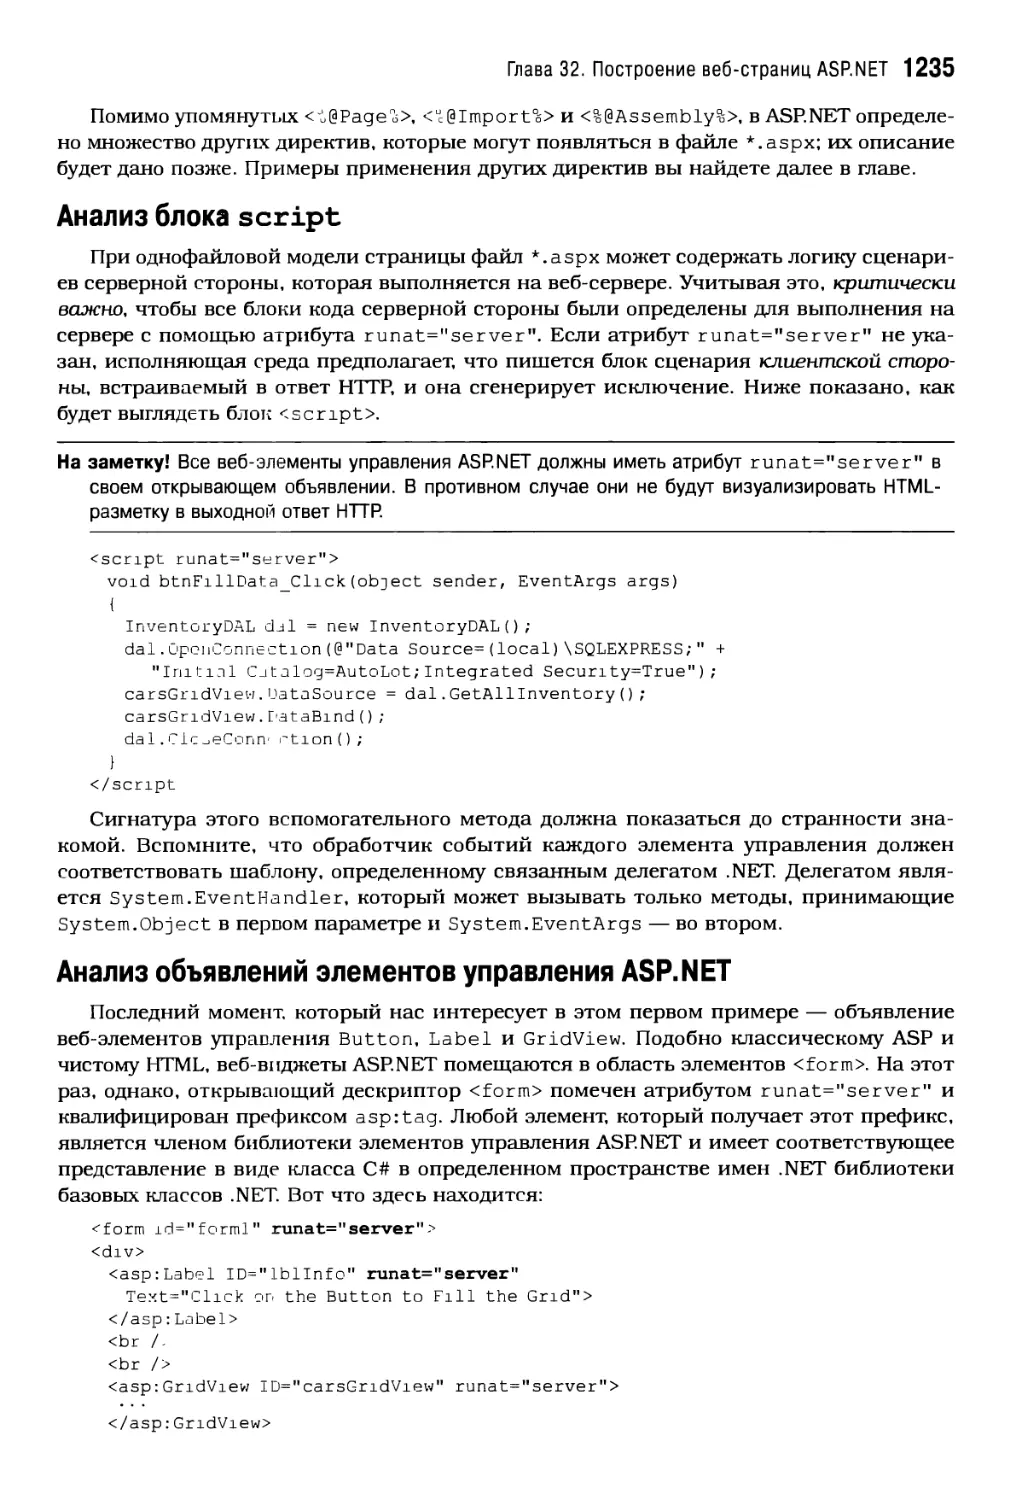 Анализ блока script
Анализ объявлений элементов управления ASP NET